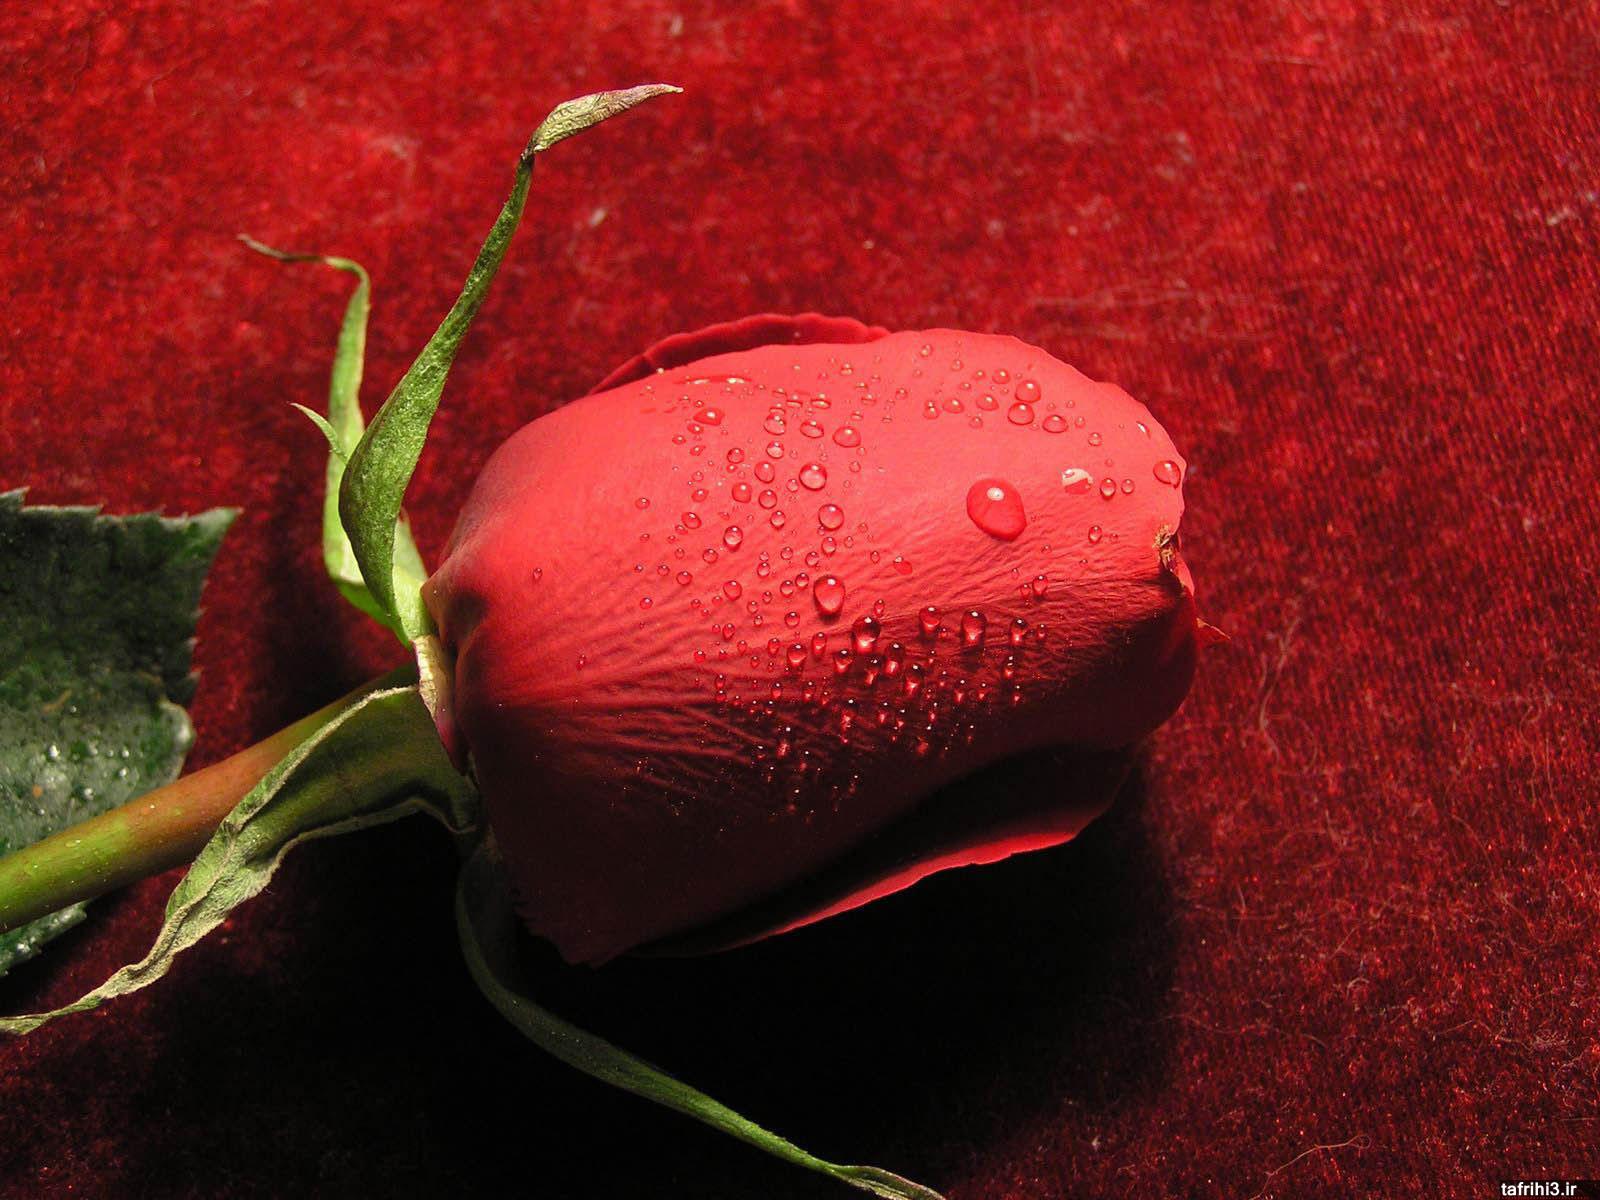 عکس های گل رز قرمز با کیفیت hd